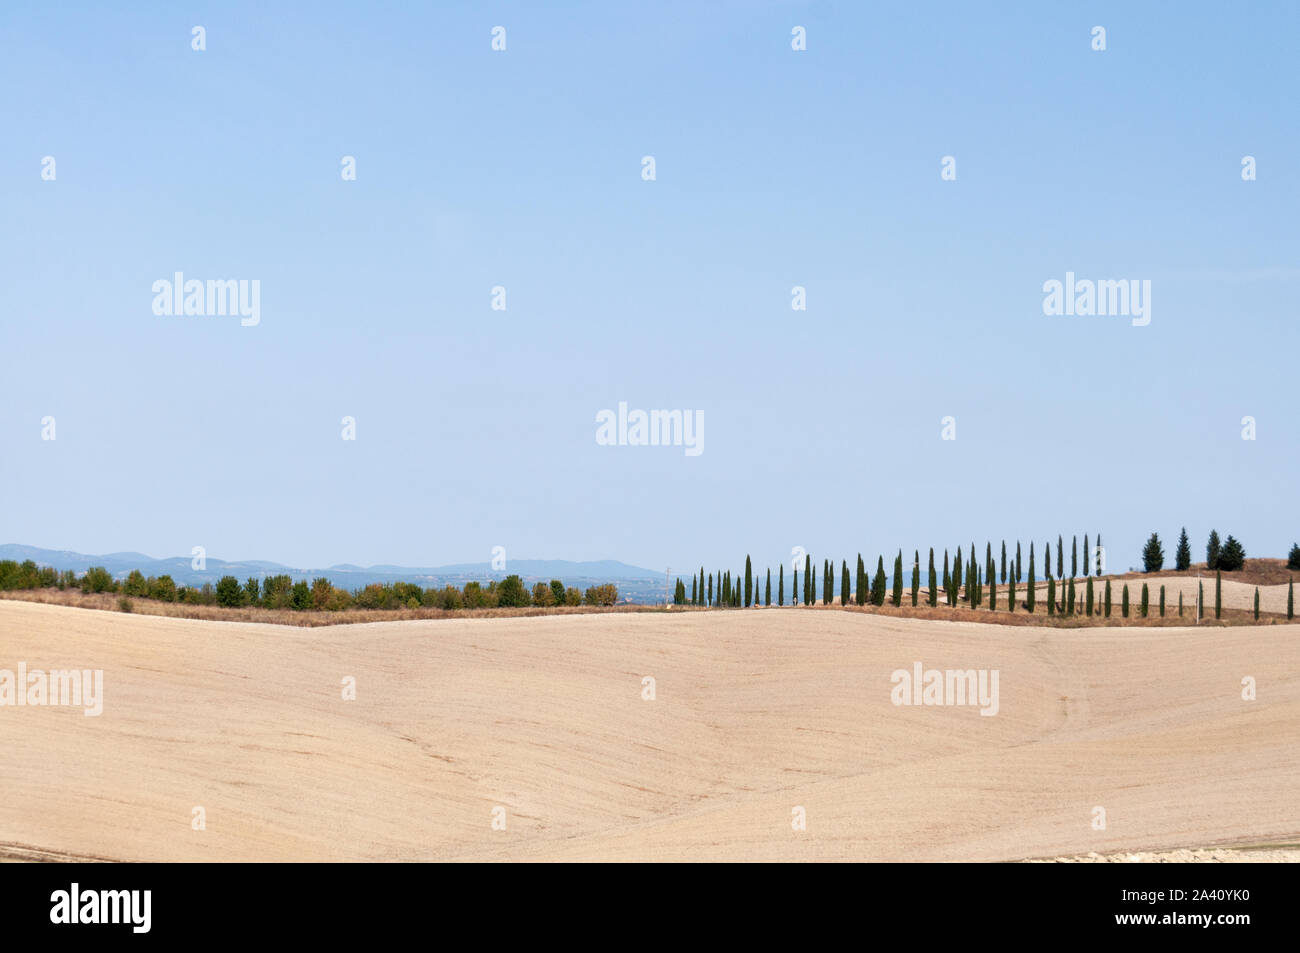 Typische helle Farben Landschaft in der Toskana. Reihe der Bäume auf dem Hügel unter einem blauen Himmel. Himmel und Erde wahren Farben. Stockfoto